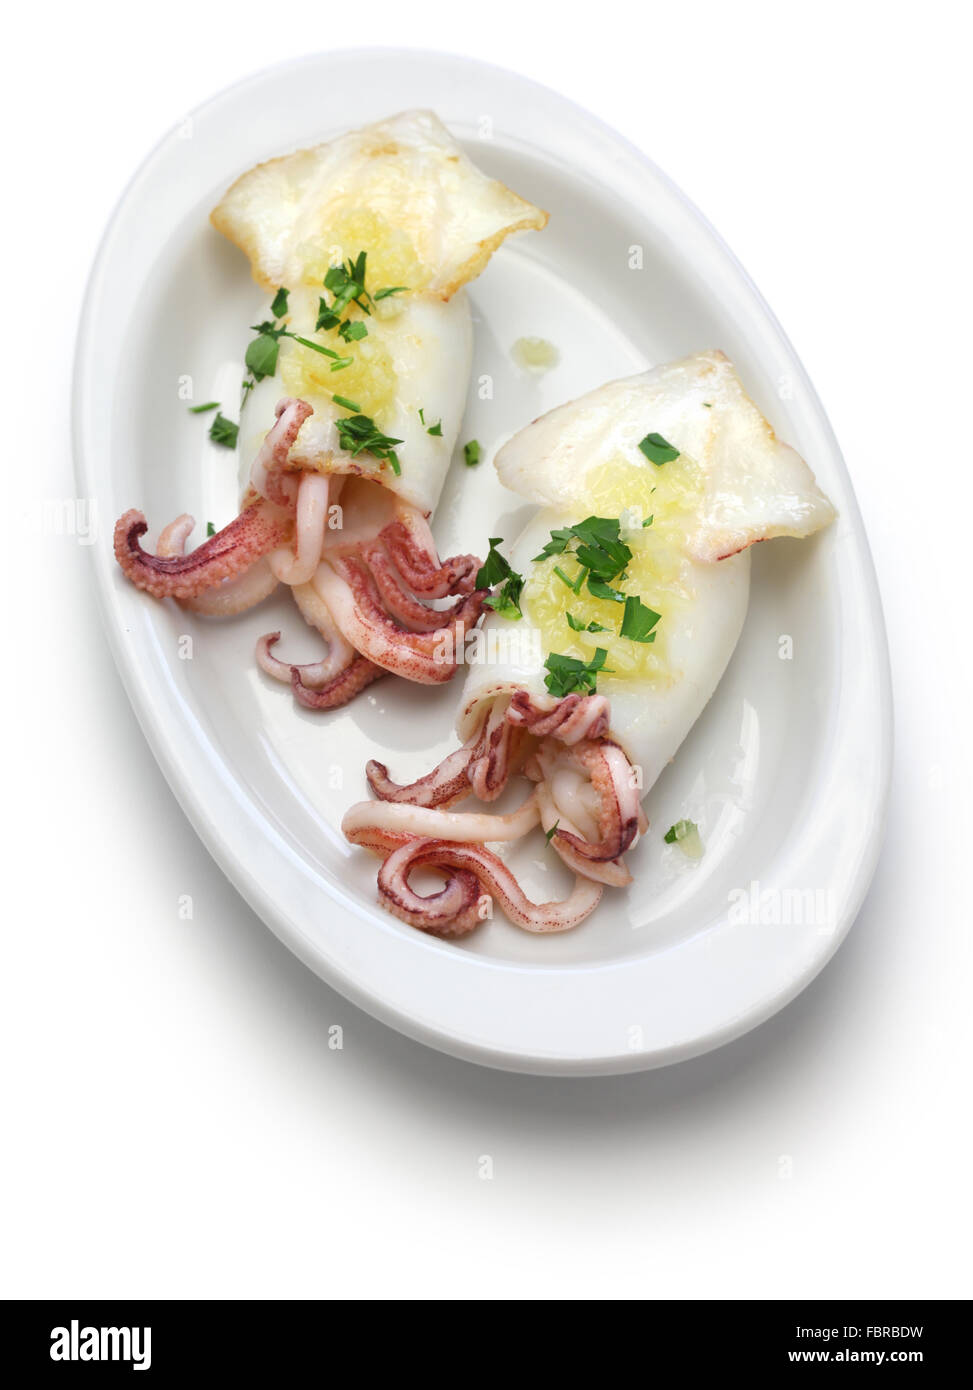 Calamares a la Plancha, gegrillten Tintenfisch, spanisches Essen isoliert  auf weißem Hintergrund Stockfotografie - Alamy